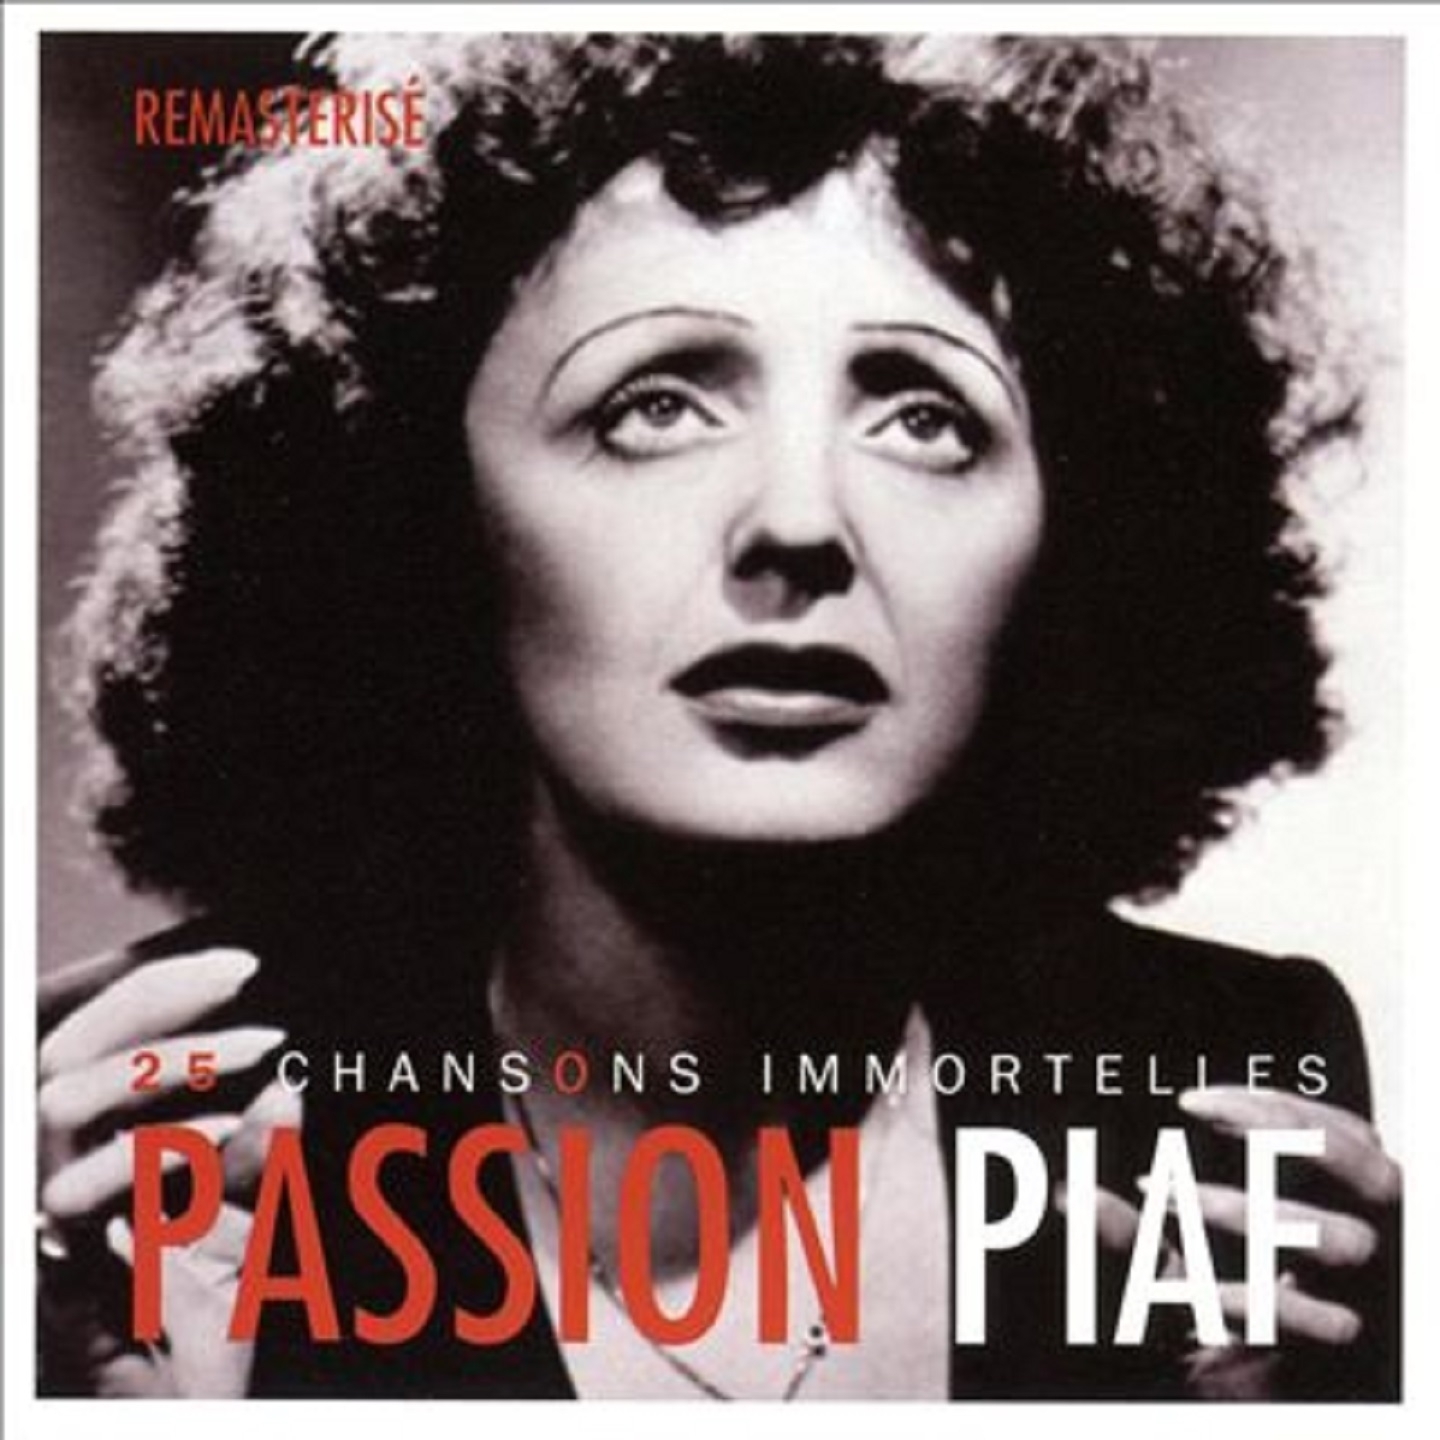 Passion piaf : 25 chansons immortelles (Remasterisé)